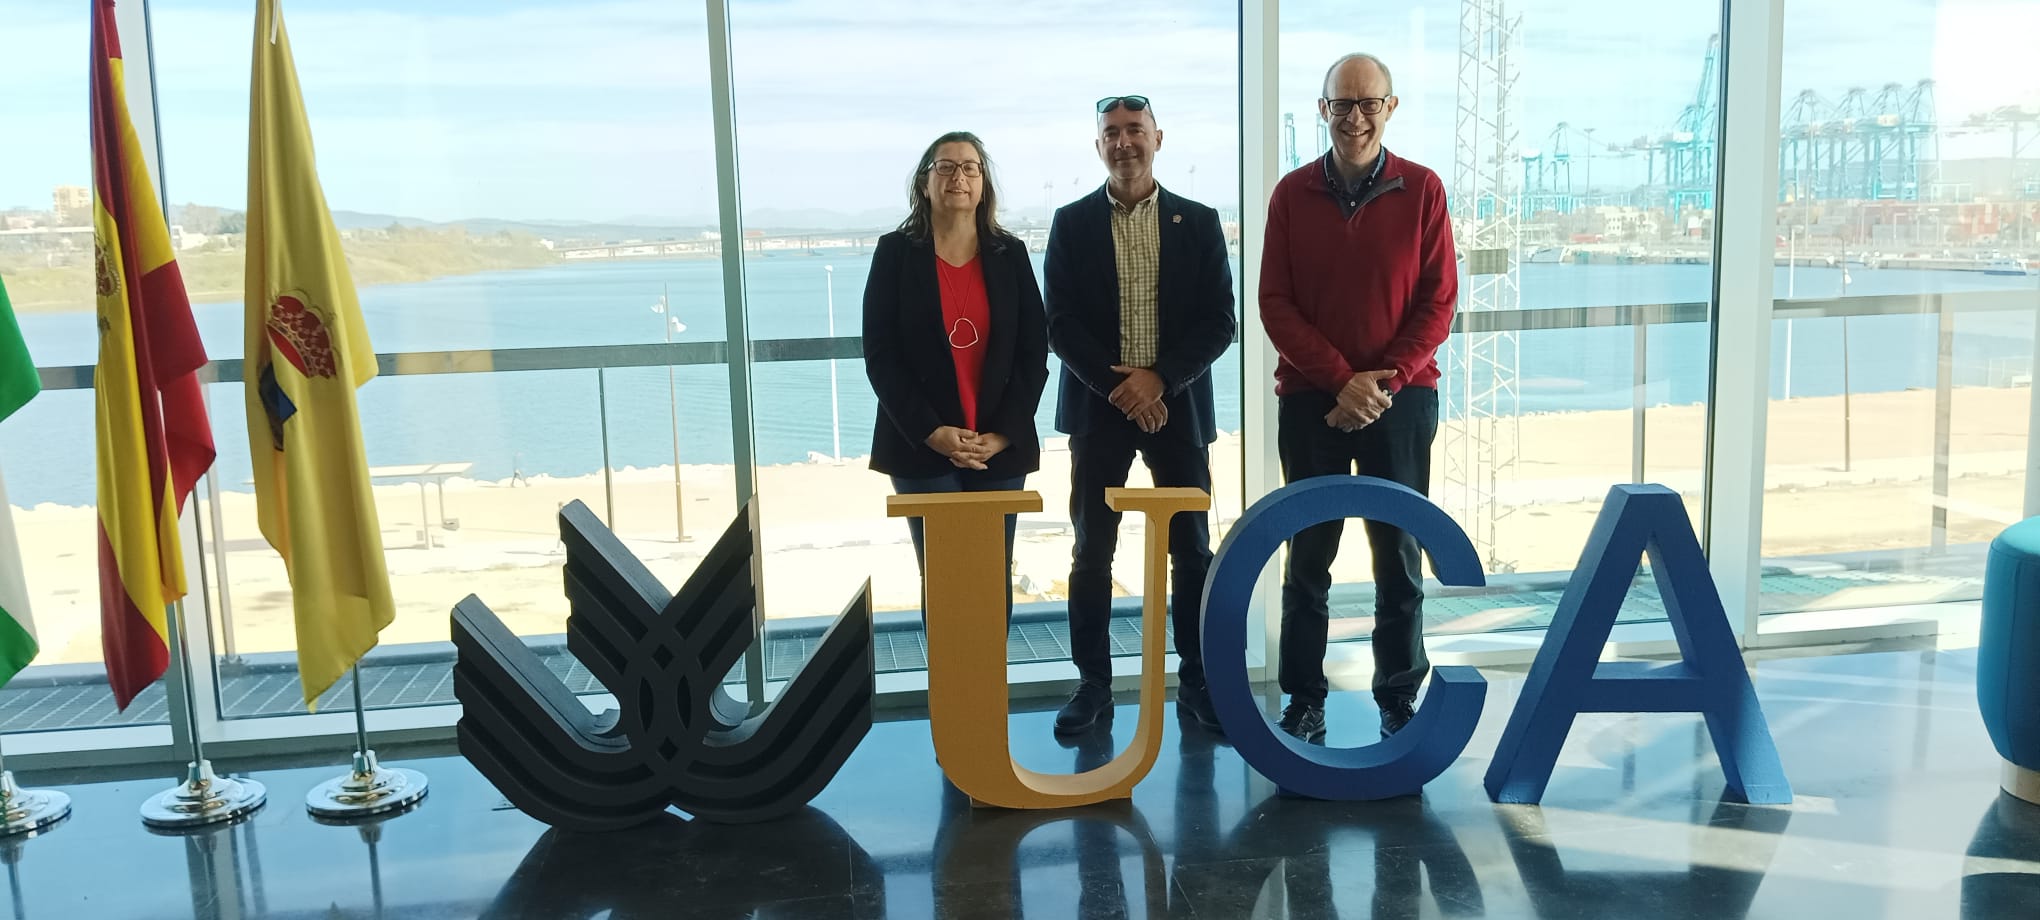 El Director del INDESS visita el Campus Bahía de Algeciras